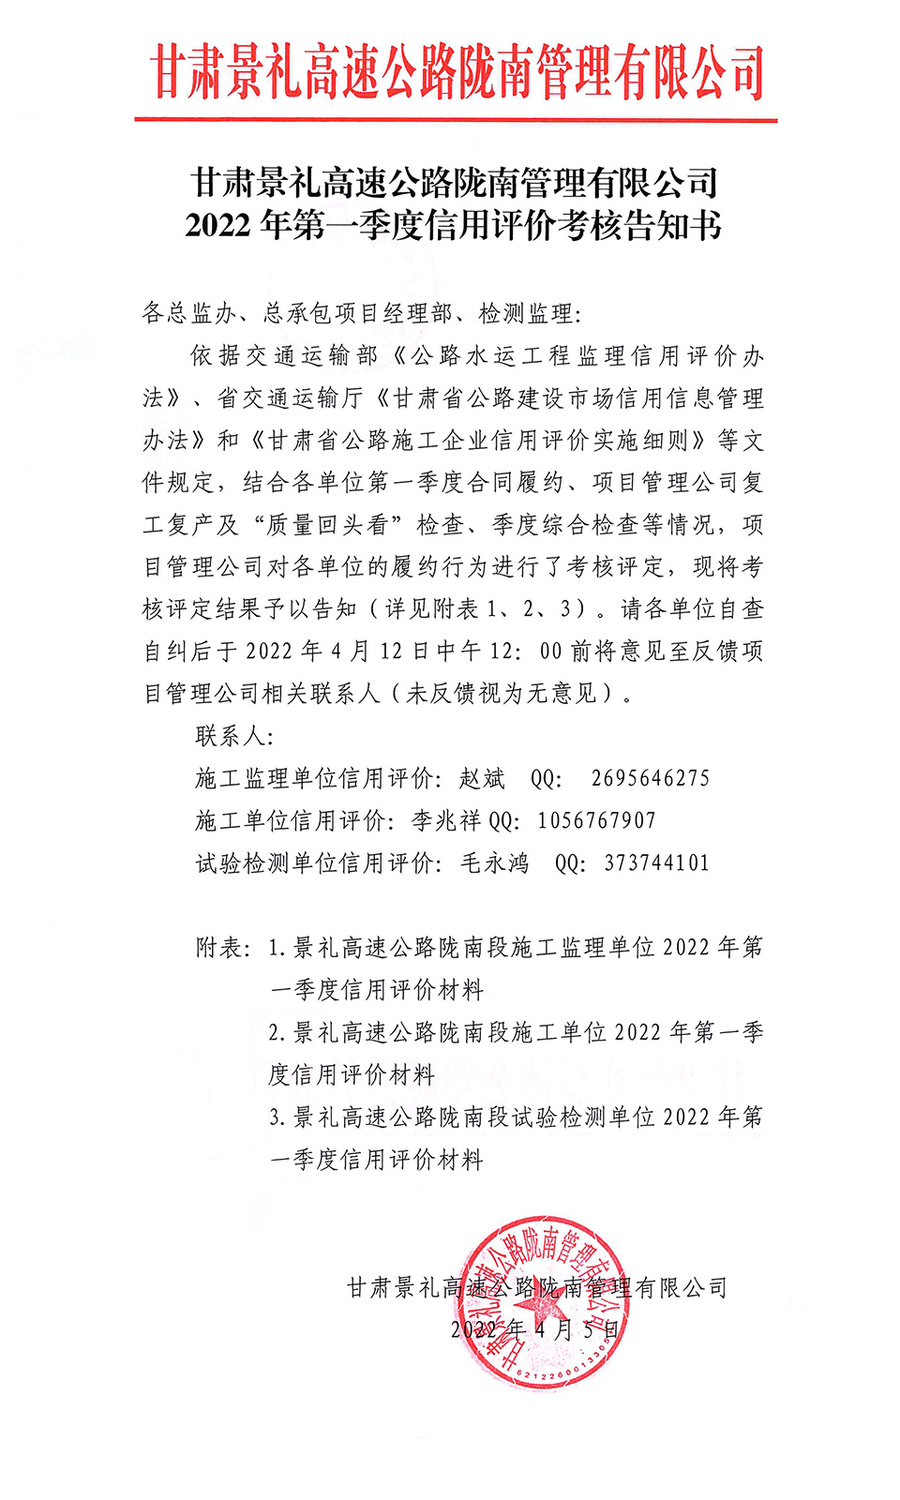 甘肃景礼高速公路陇南管理有限公司2022年第一季度信用评价考核告知书_页面_1.jpg